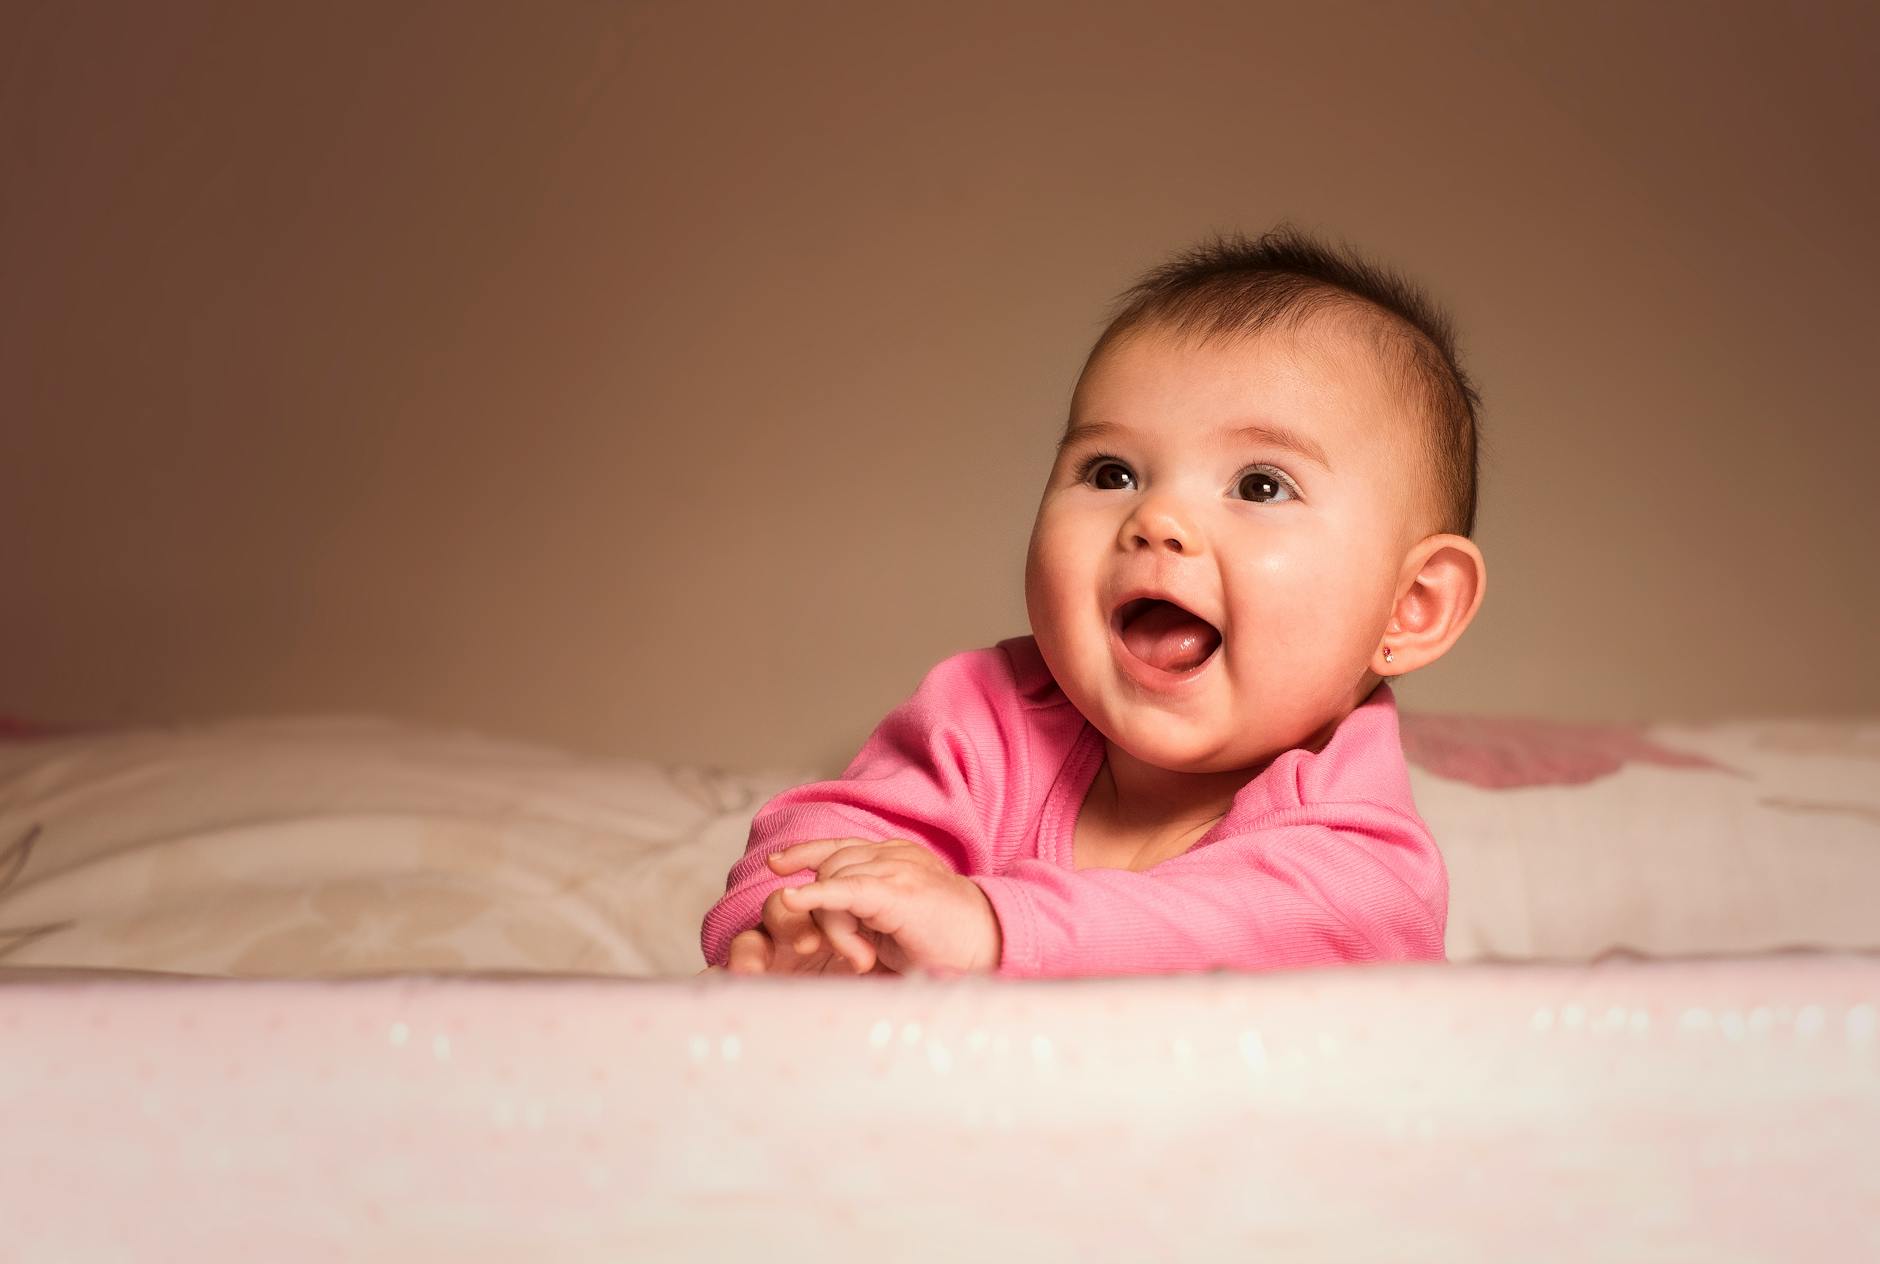 أجمل صور الاطفال | Heartwarming Baby Photos | جزء 2 Pexels-photo-1557182